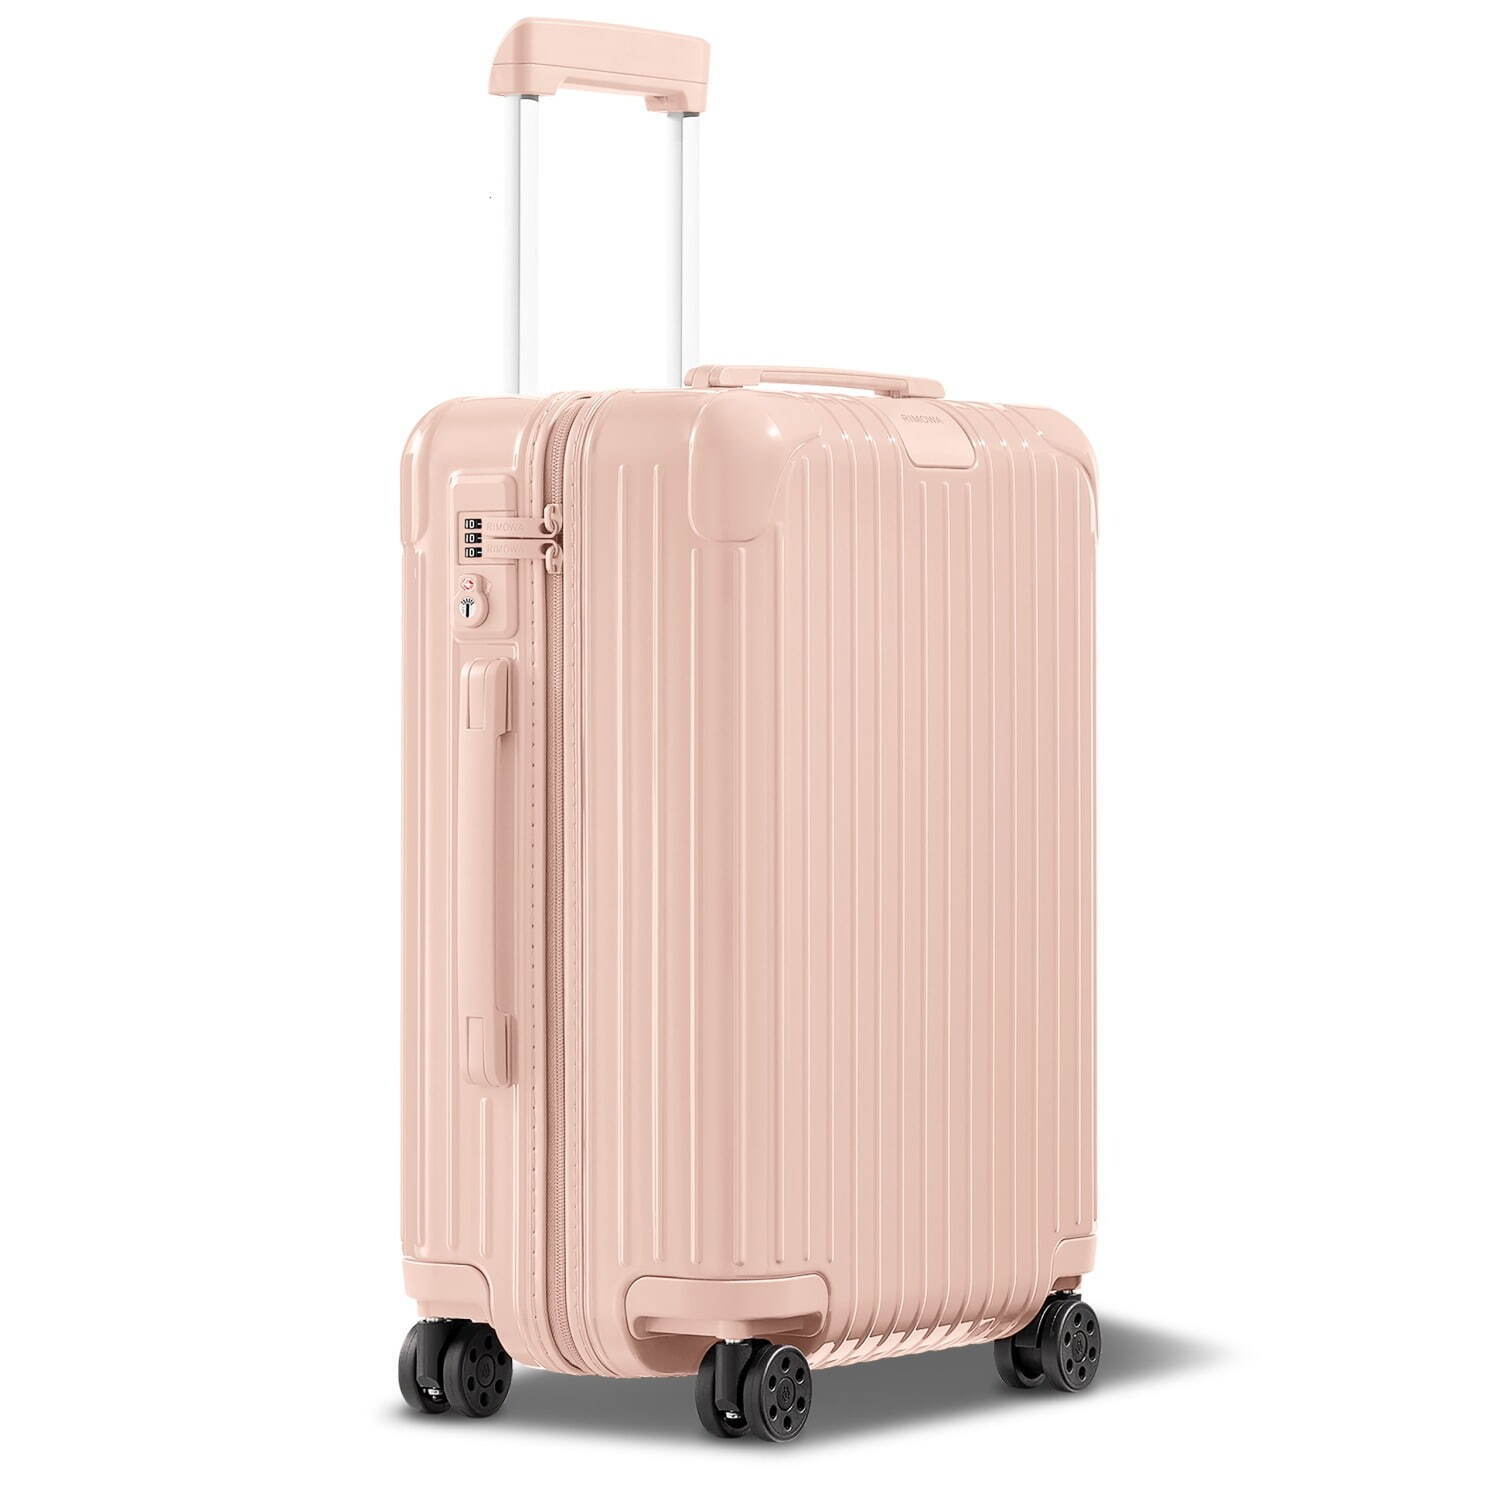 リモワのスーツケース「エッセンシャル」新色、パステルピンク